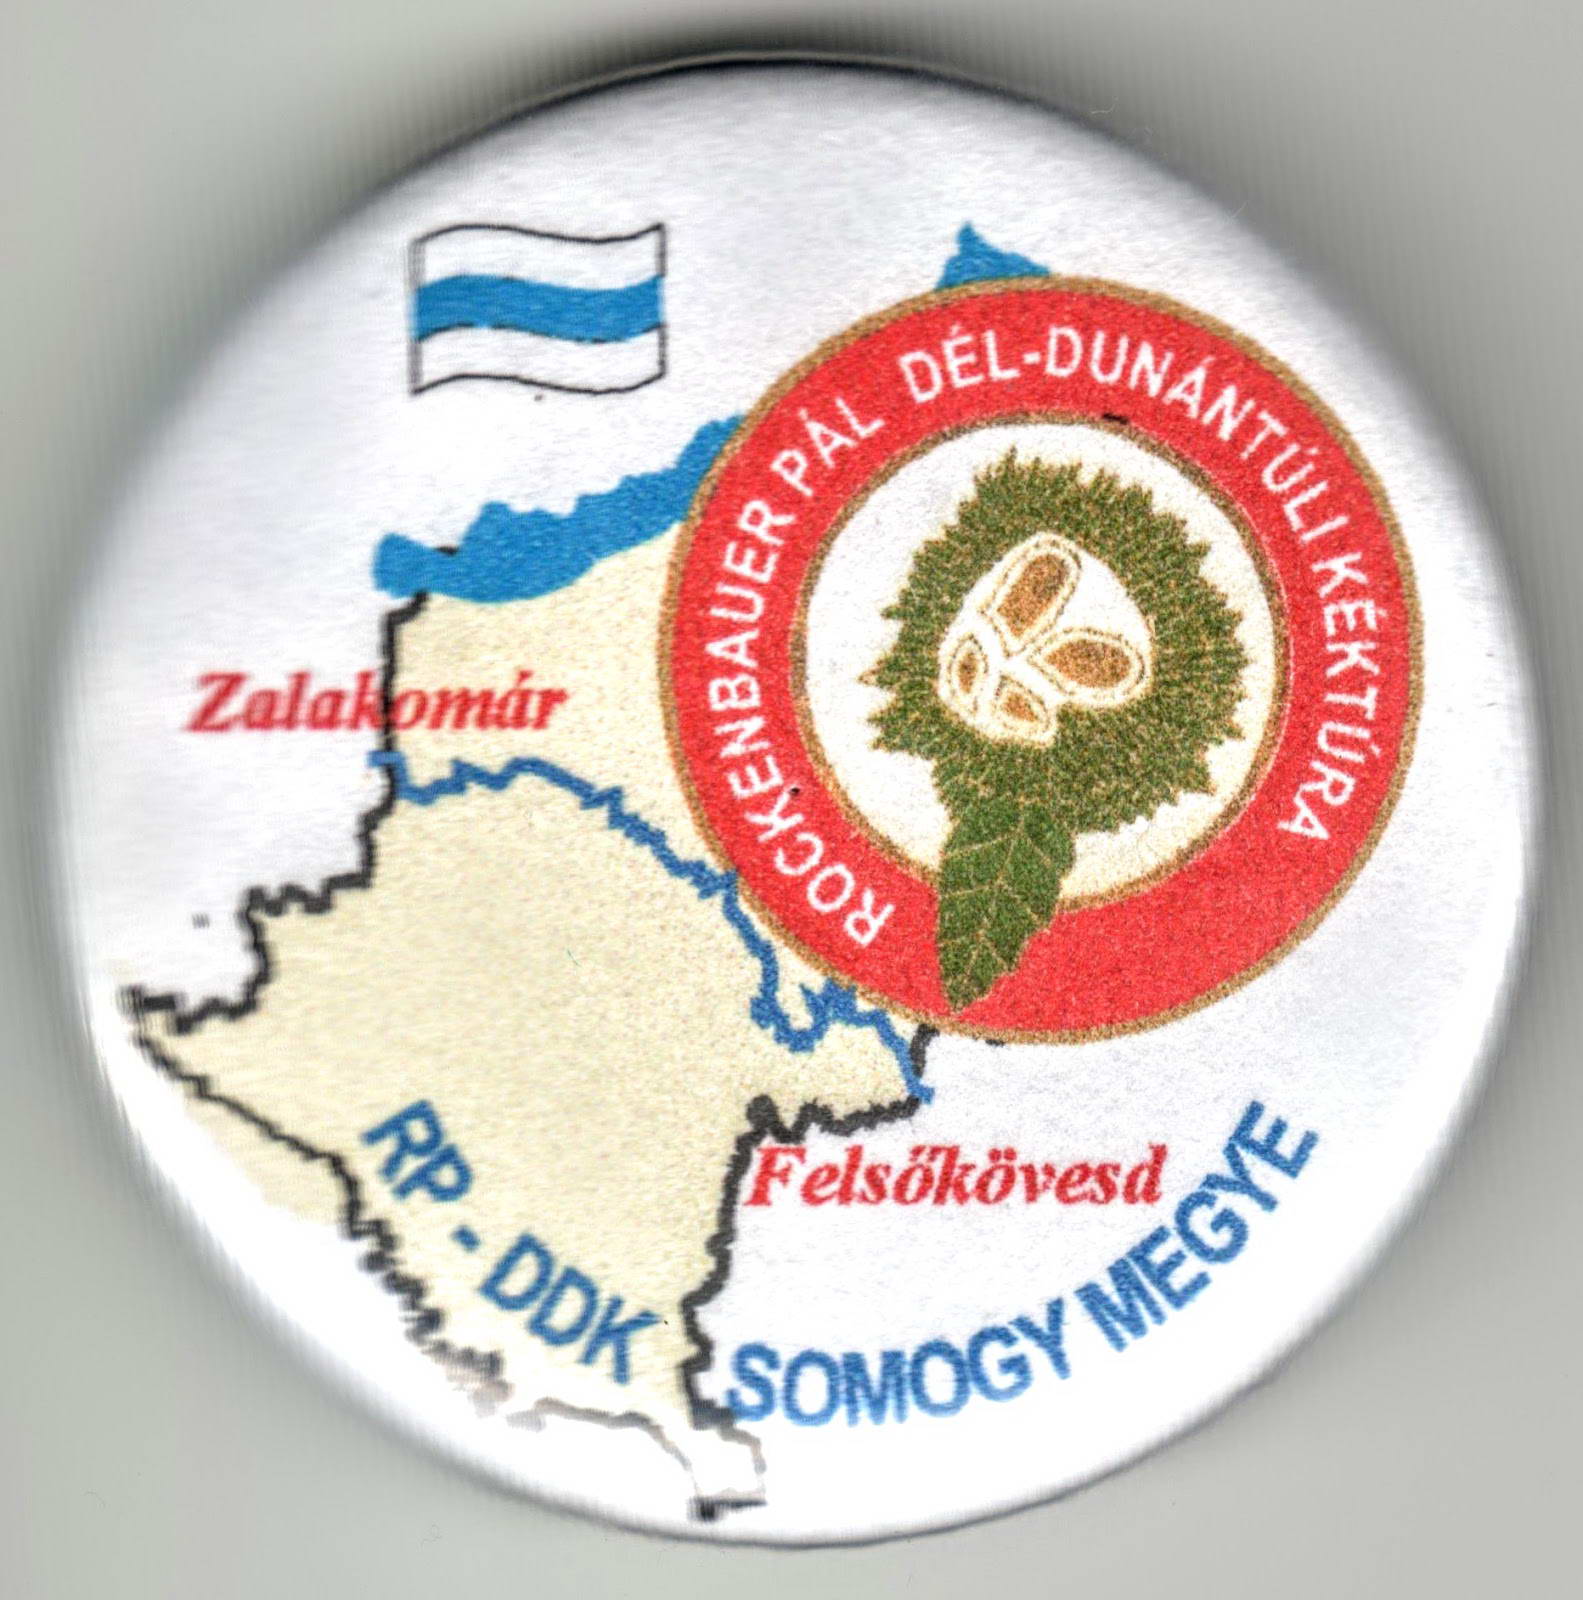 A Rockenbauer Pál Dél-dunántúli Kéktúra Somogy megyei szakaszjelvénye - A kép megnyitásához kattints ide!